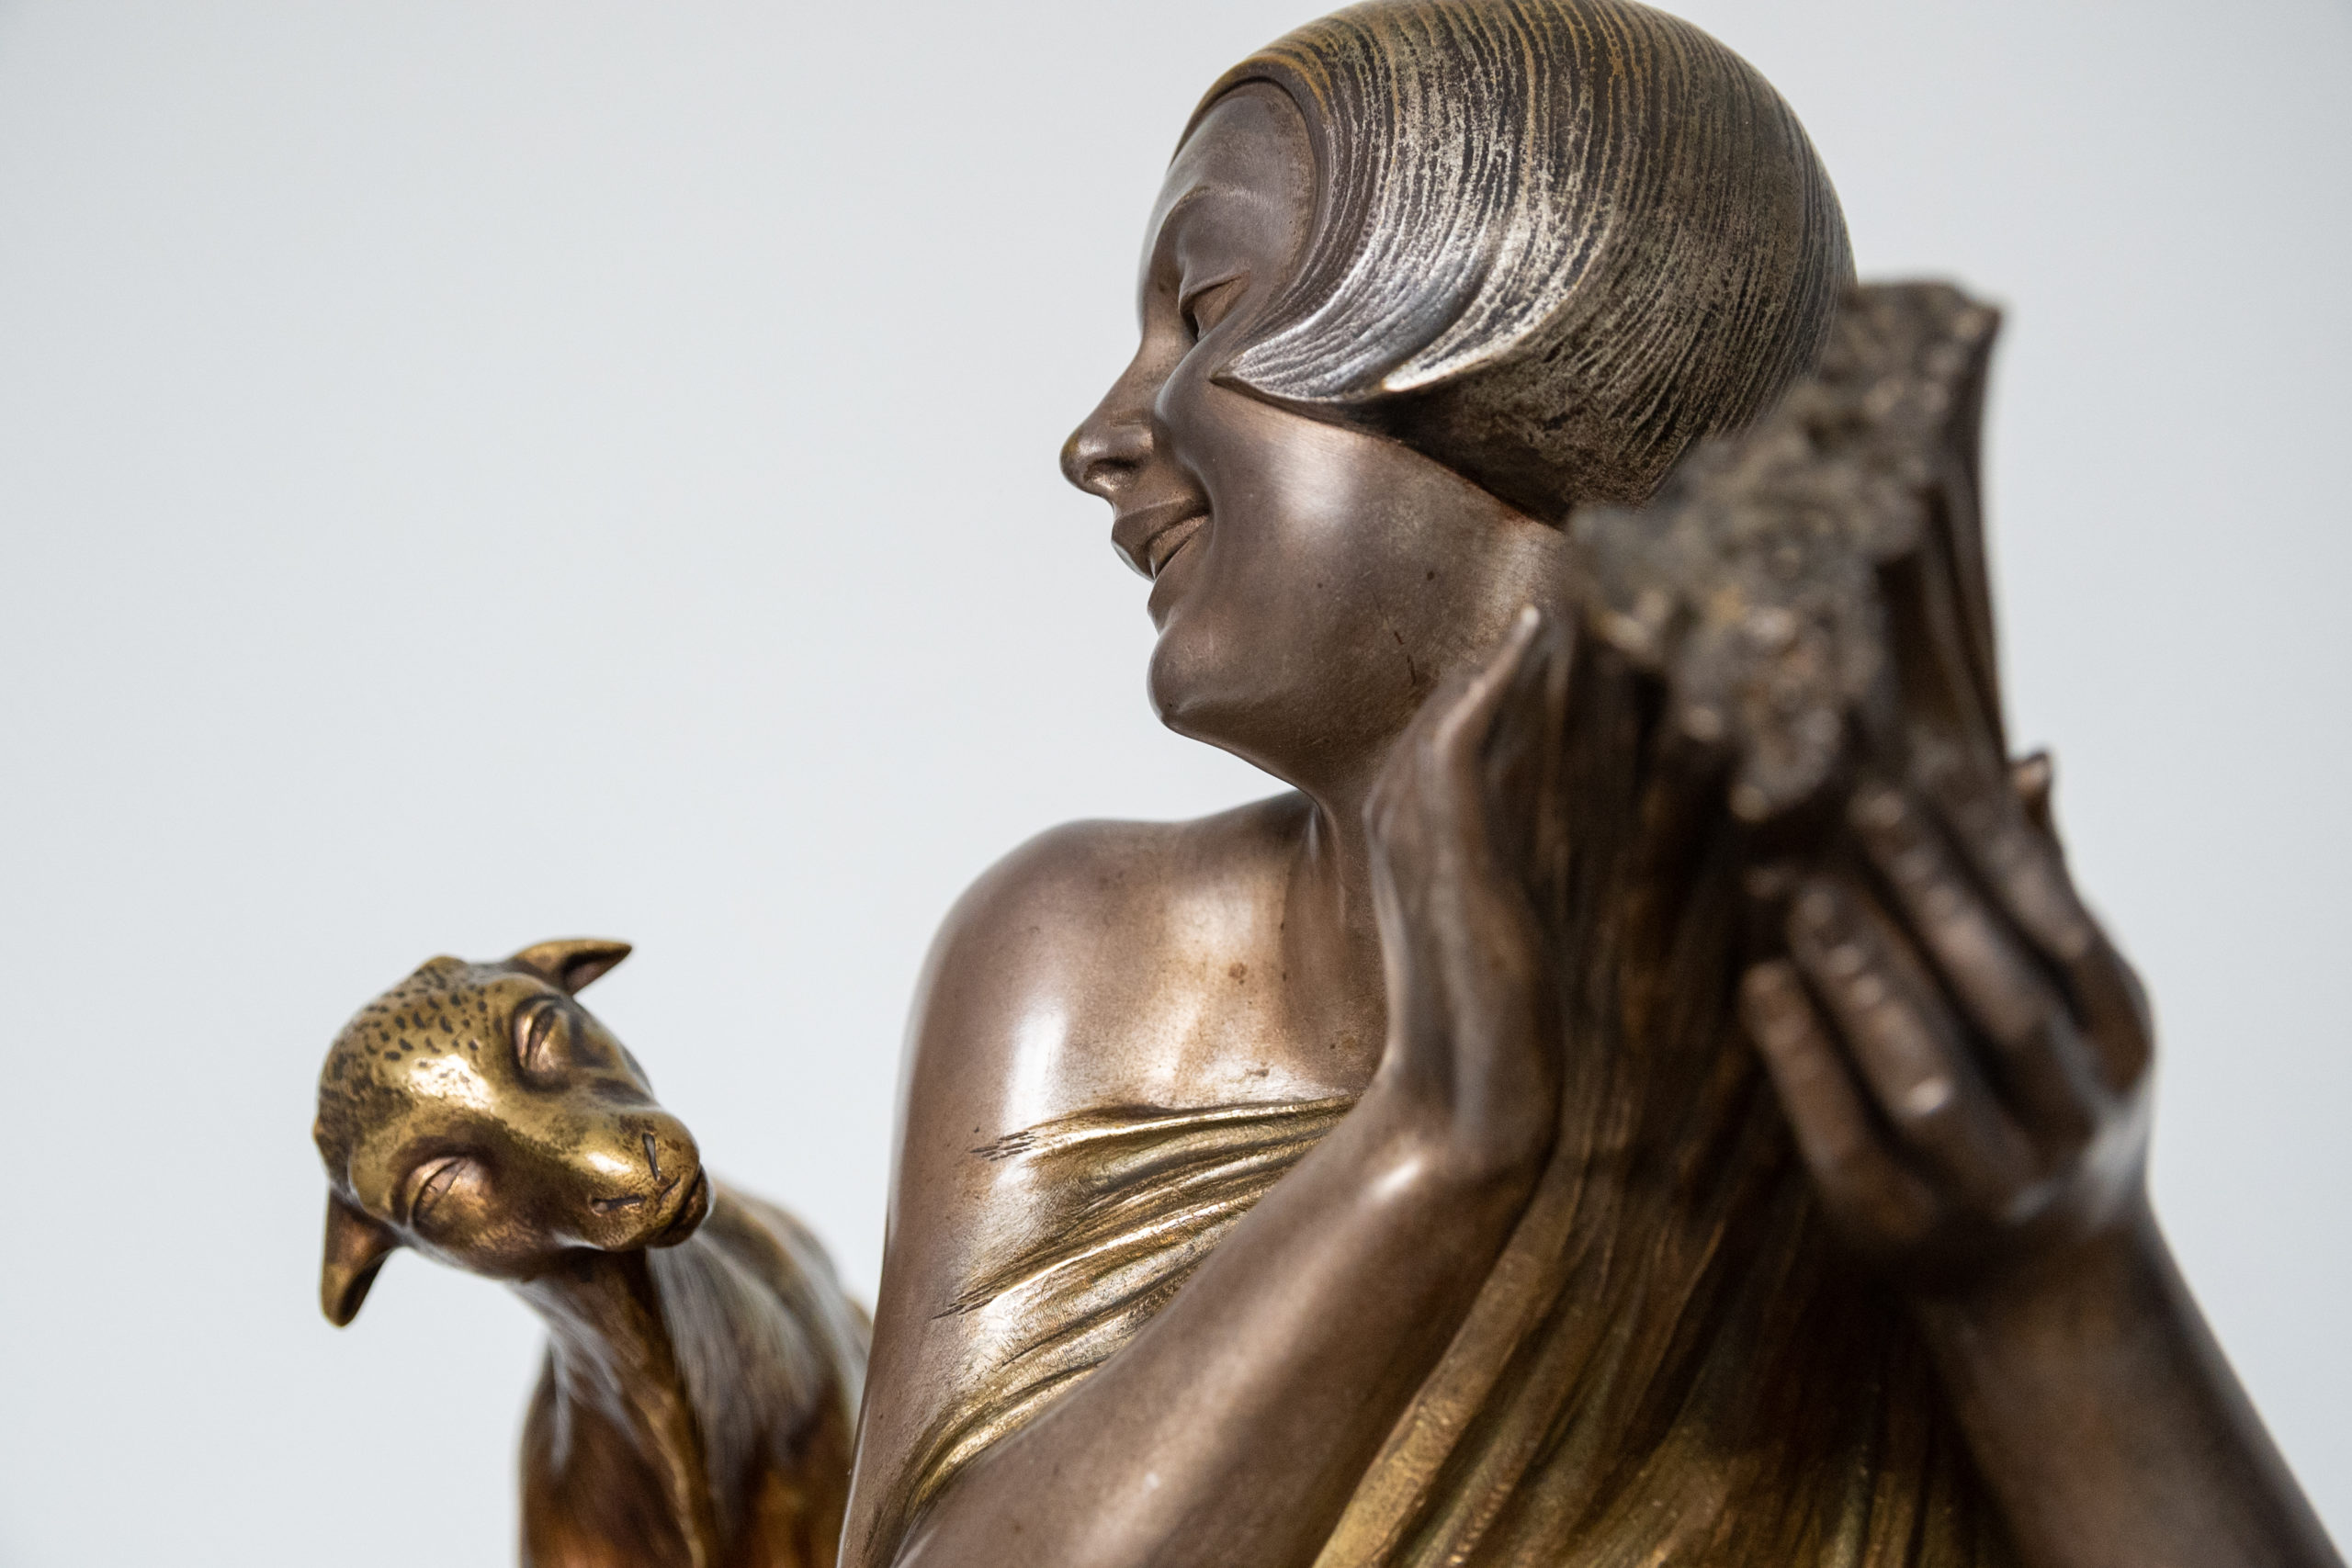 Armand-godard-sculpture-bronze-argenté-art-deco-XXe-france-aurore-morisse-affaire-conclue-antiquaire-liege-belgique6